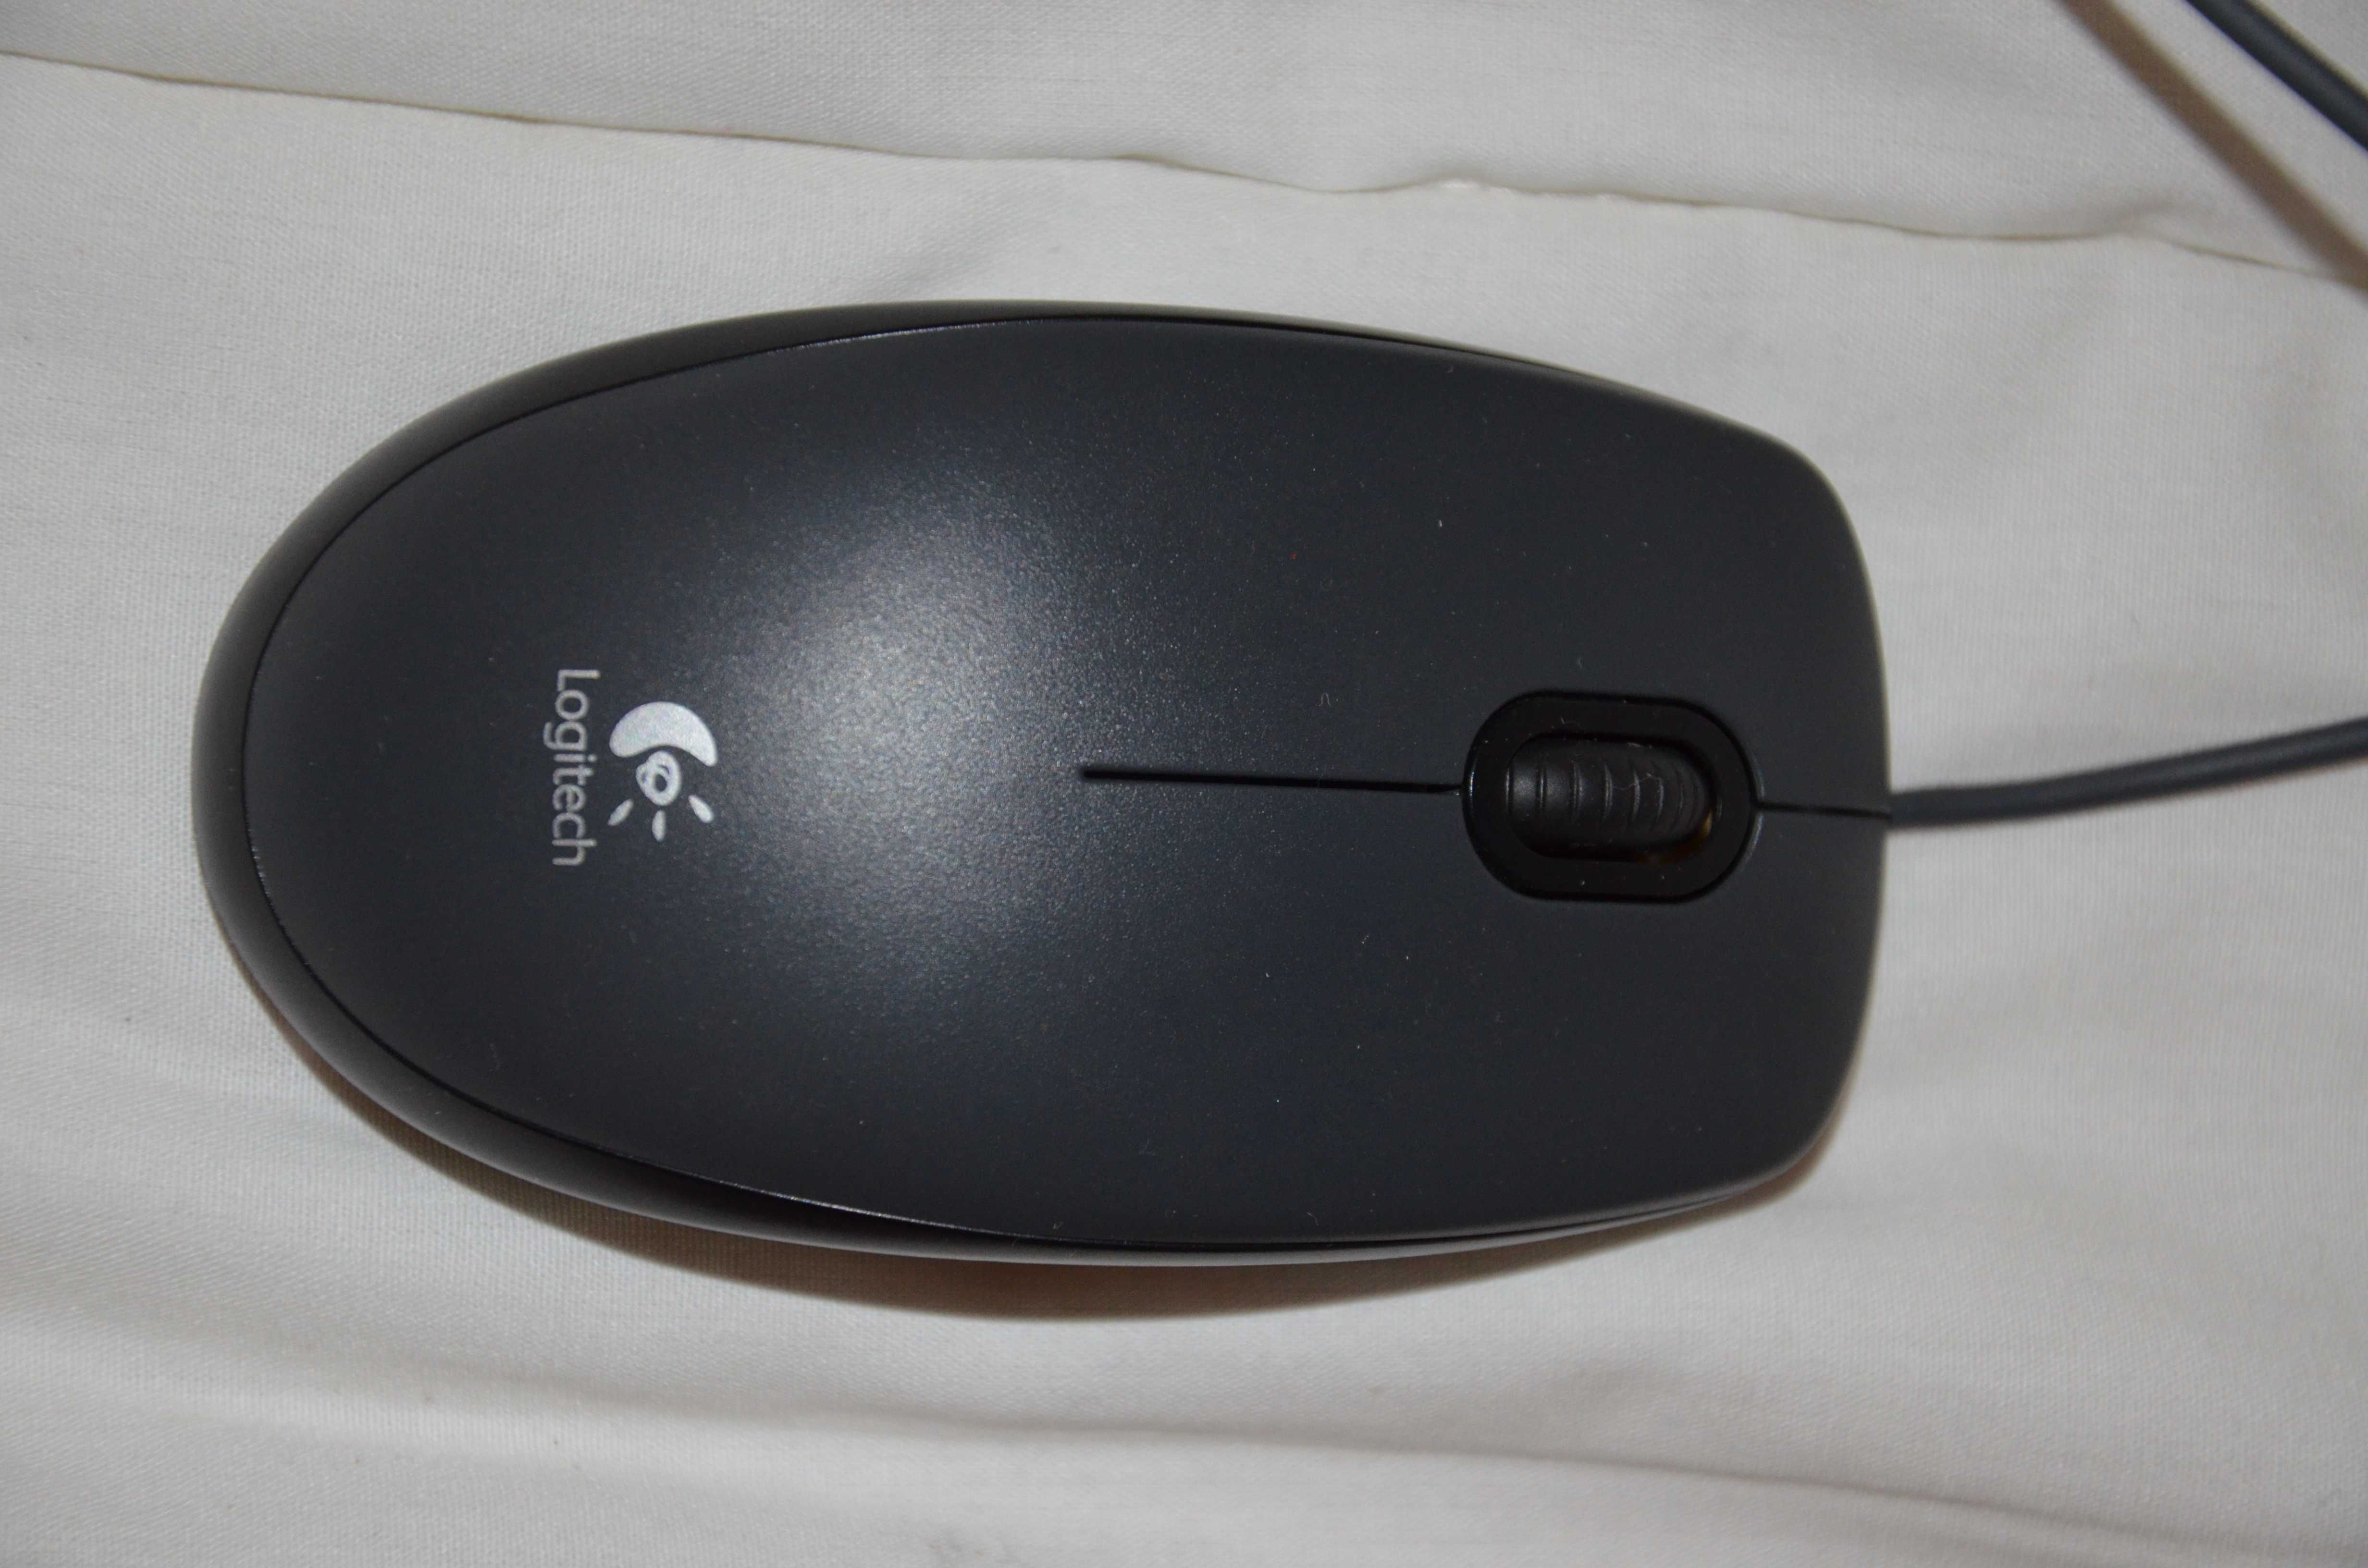 Prawie nowa przewodowa mysz optyczna Logitech M90 - idealna dla kobiet